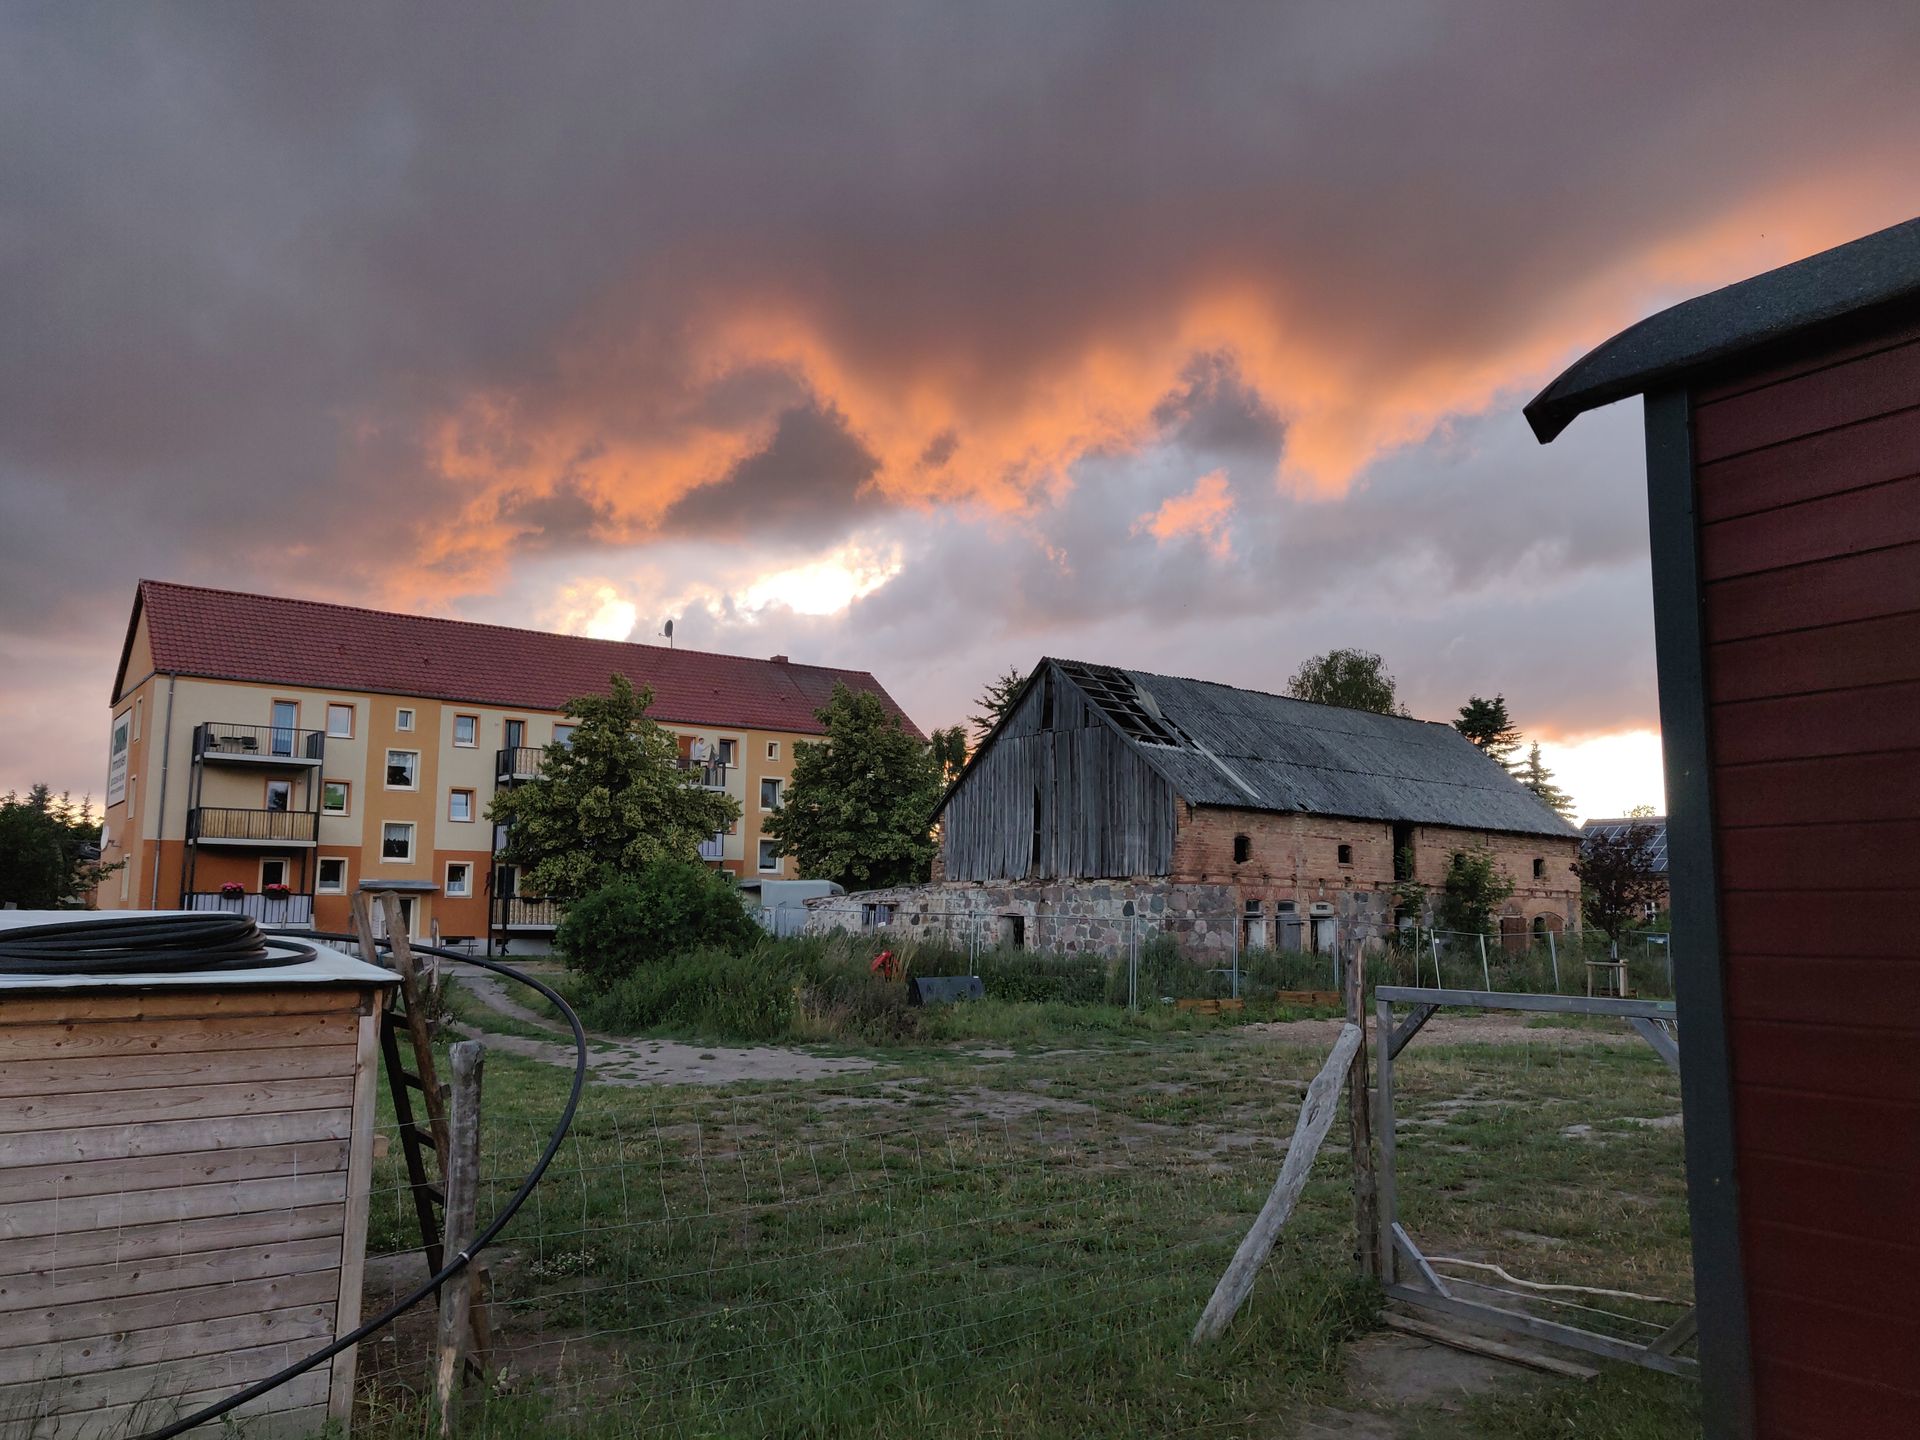 Coucher de soleil dans le village de Flieth, nuages orangés